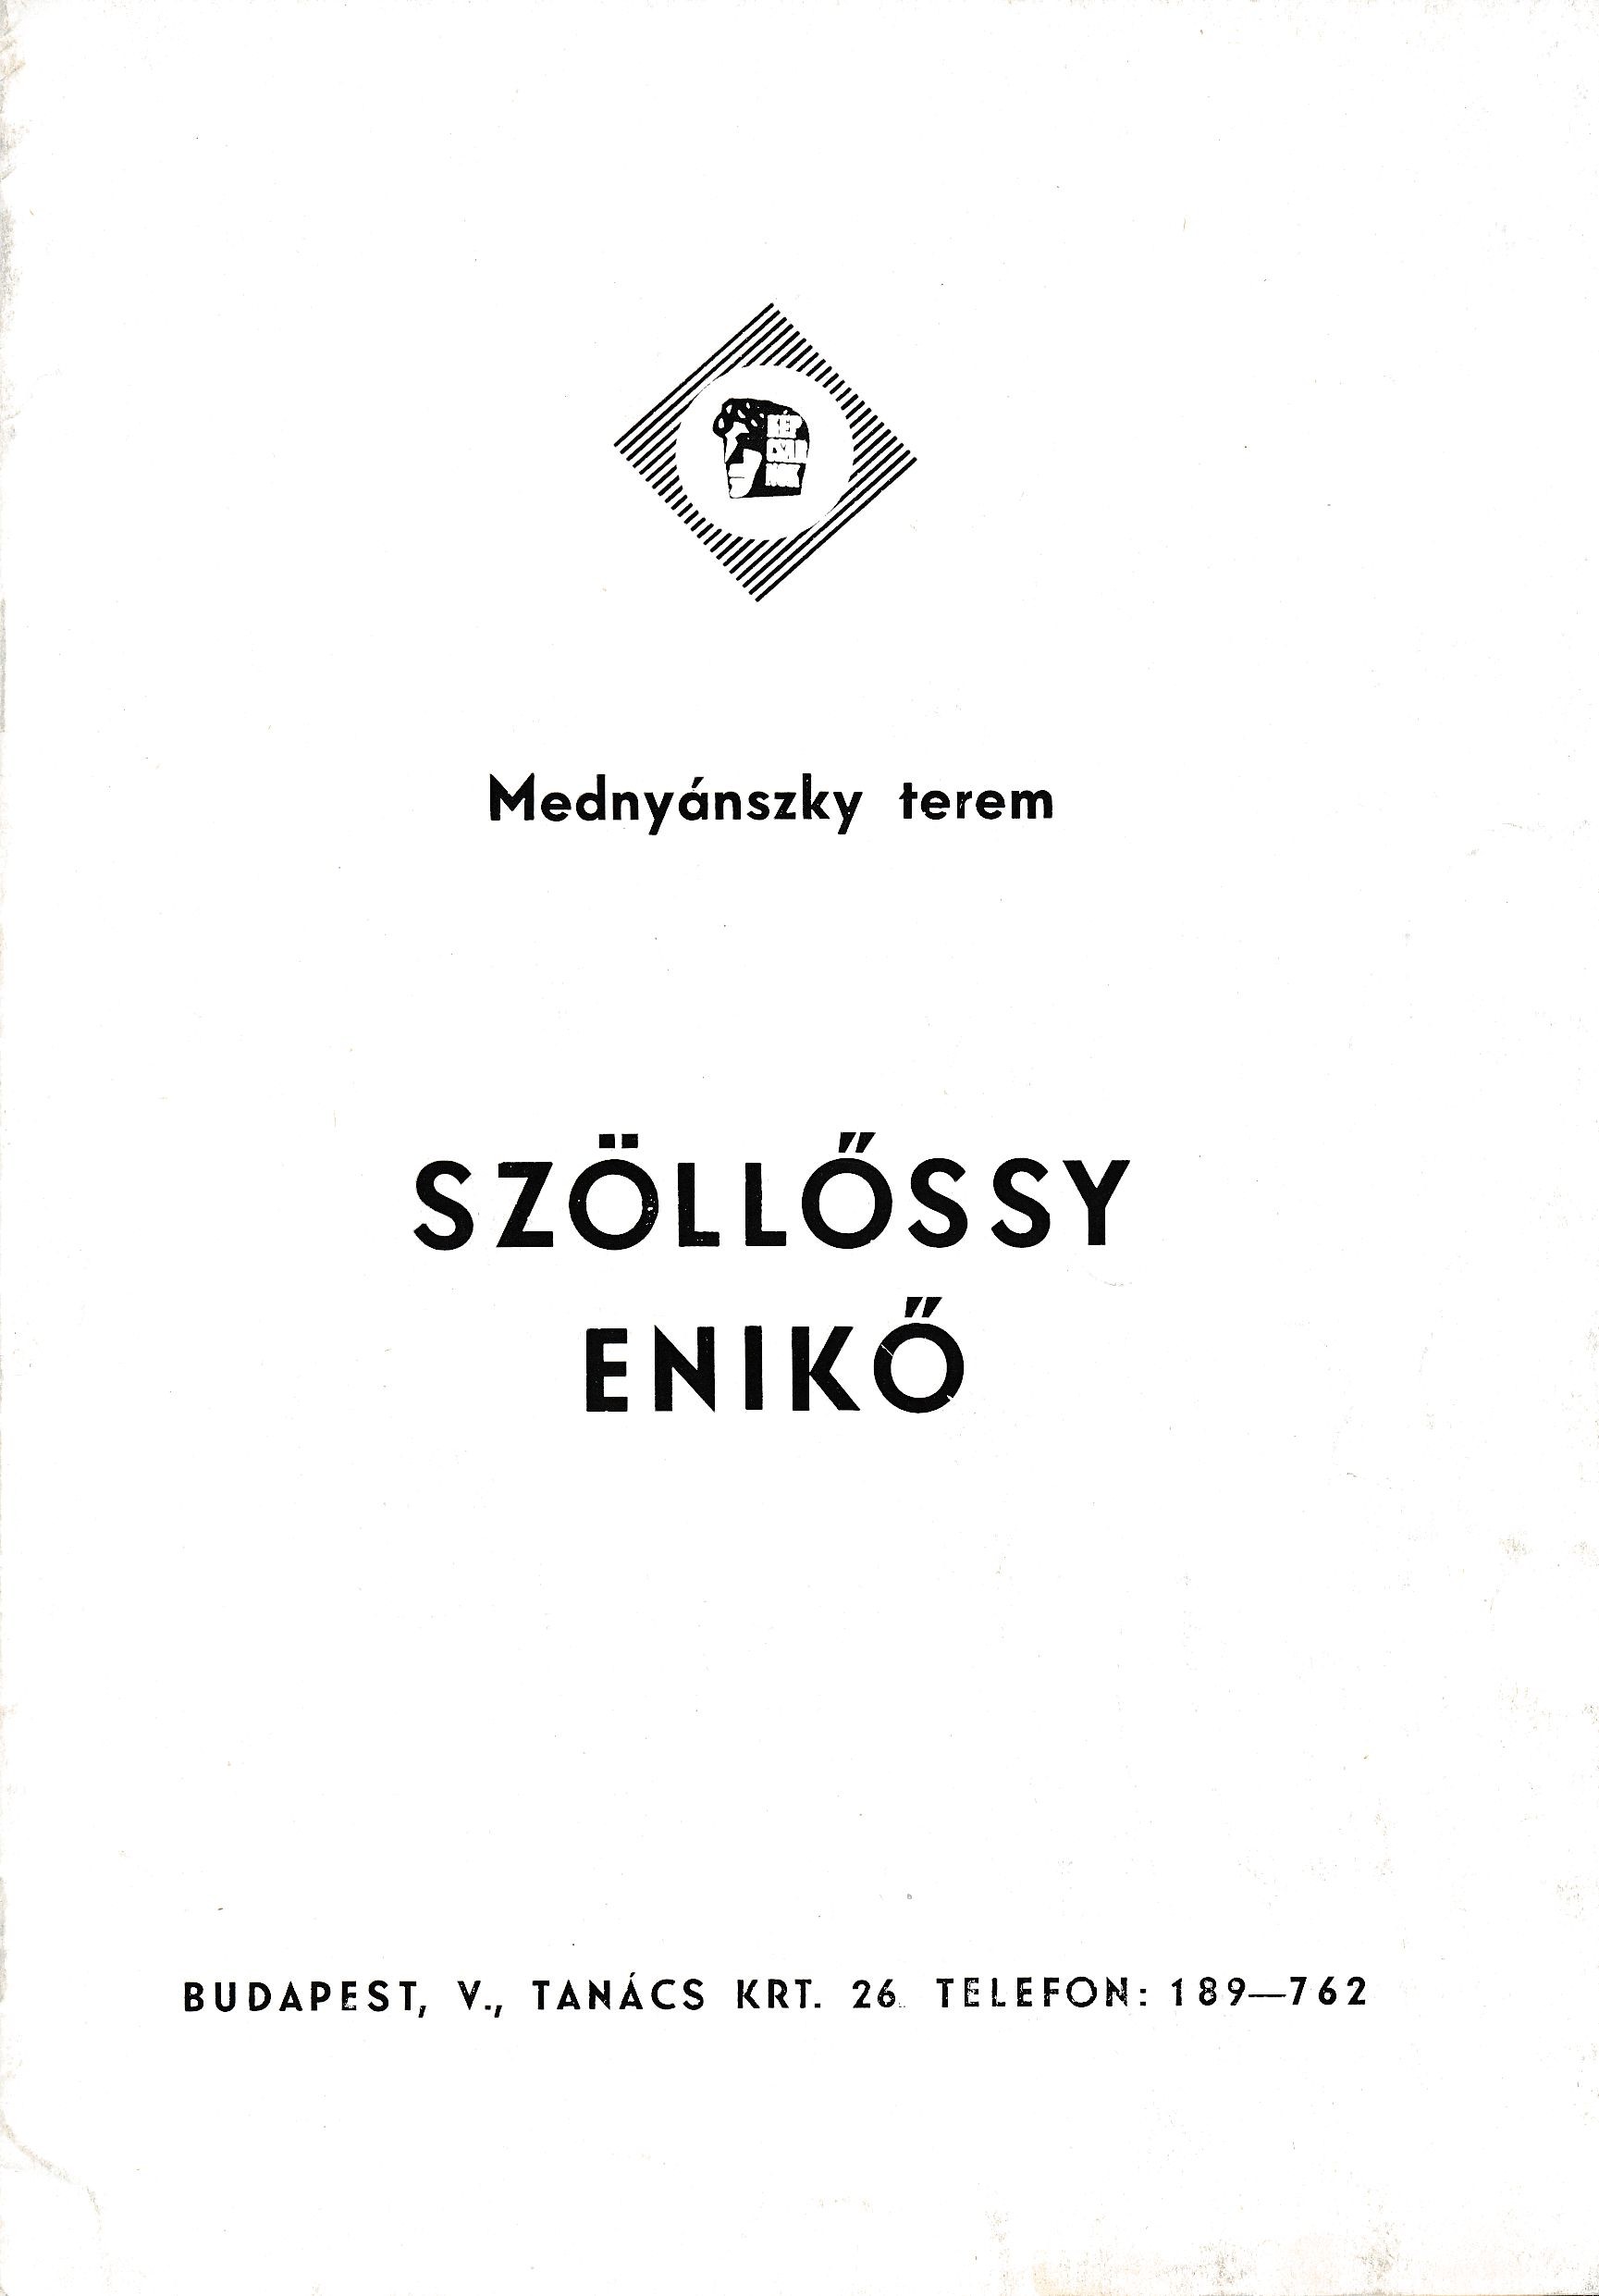 Szöllőssy Enikő kiállítása Budapest Mednyánszky Terem 1969 (Design DigiTár – Iparművészeti archívum CC BY-NC-SA)